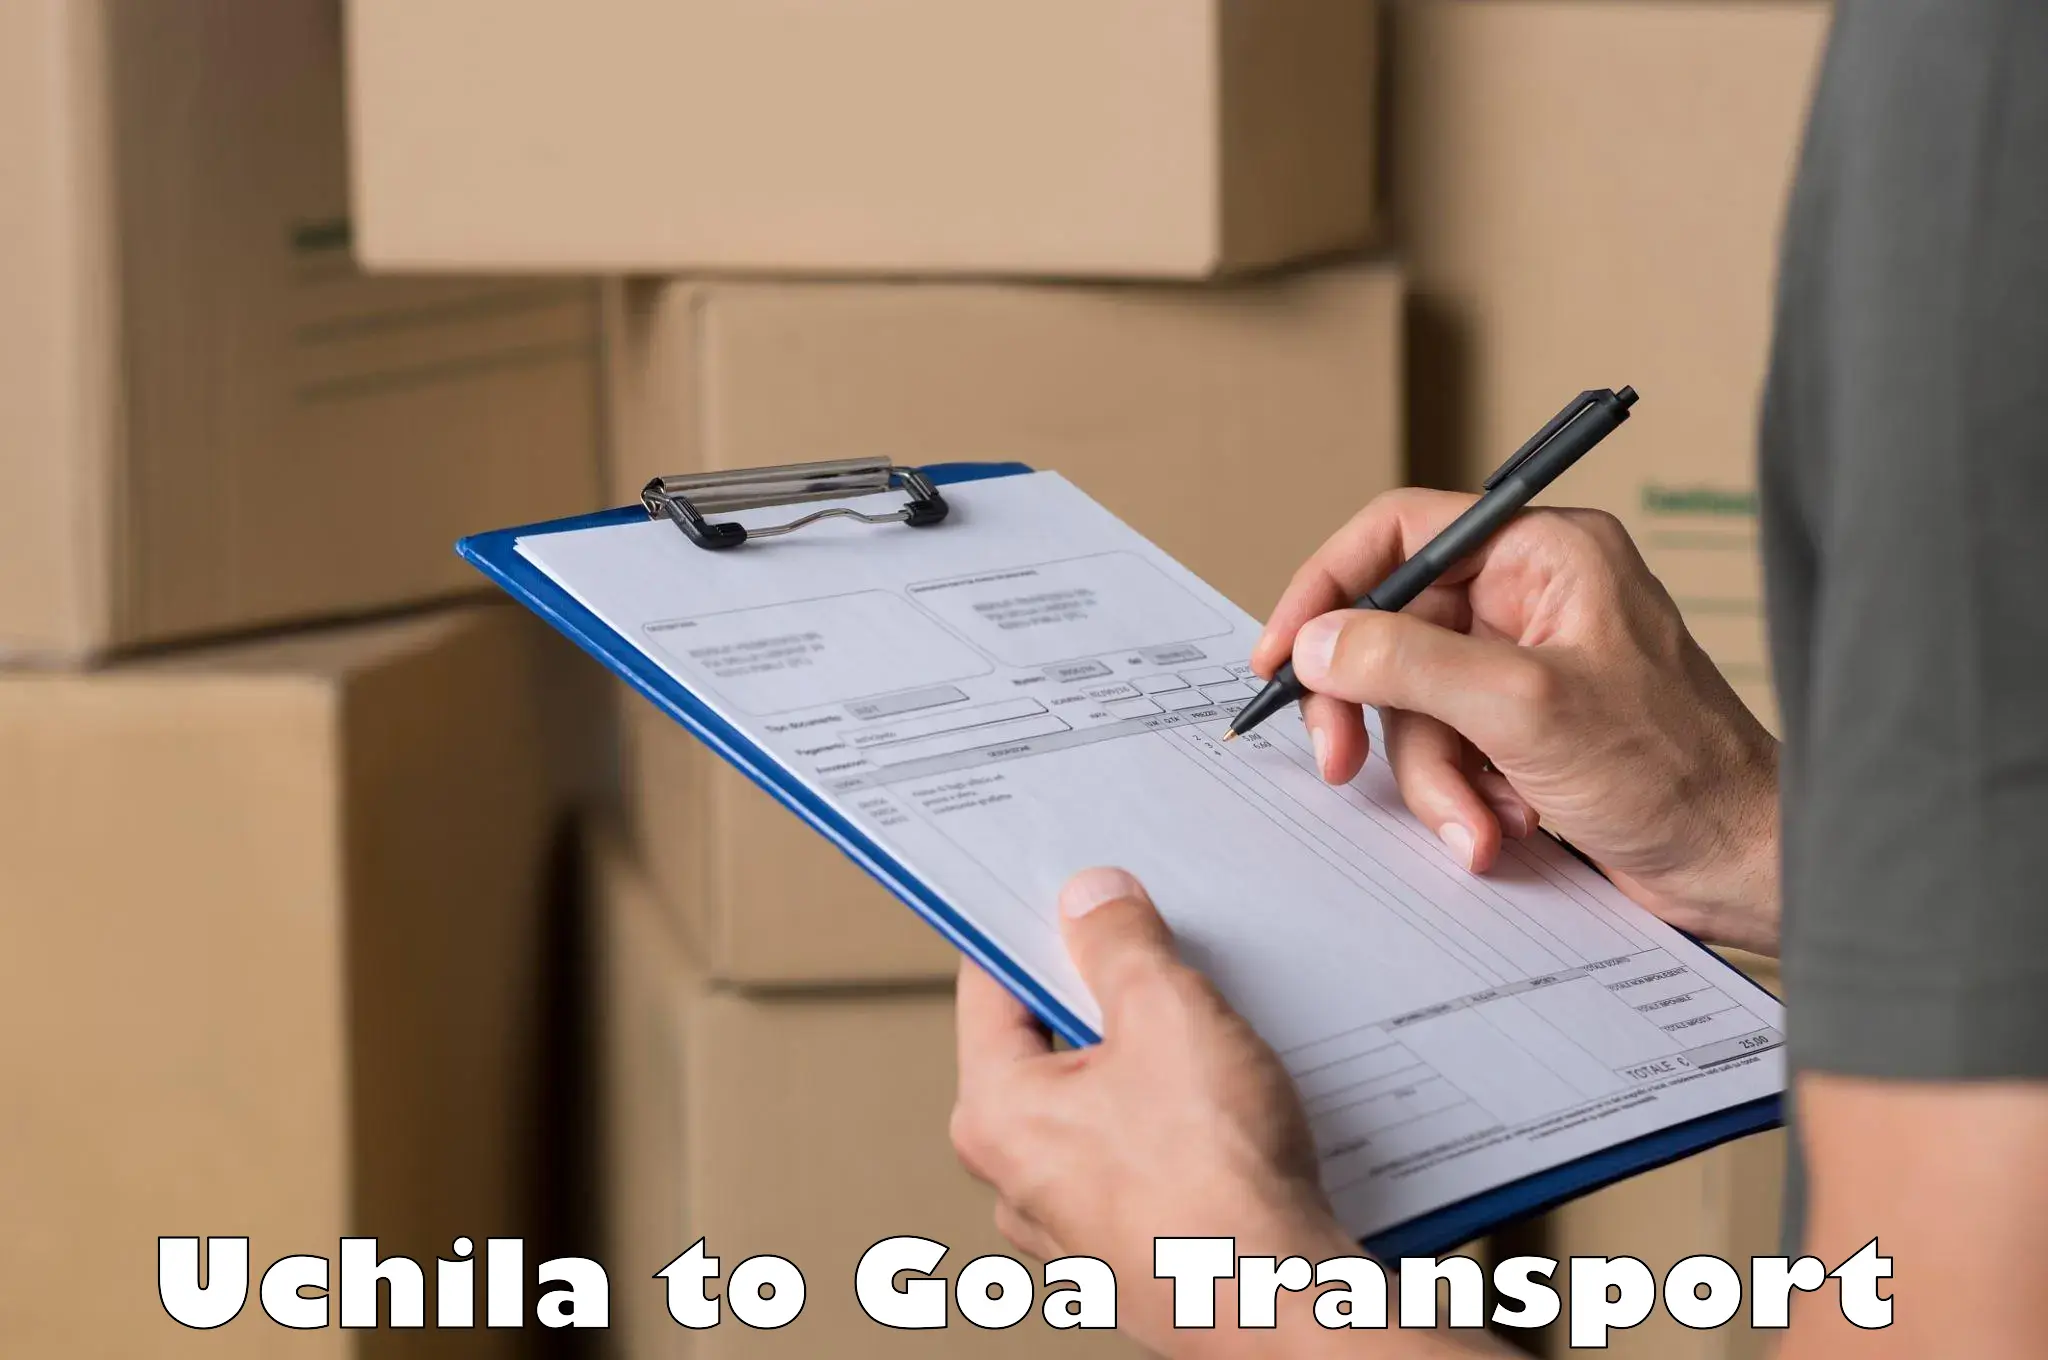 International cargo transportation services Uchila to Mormugao Port